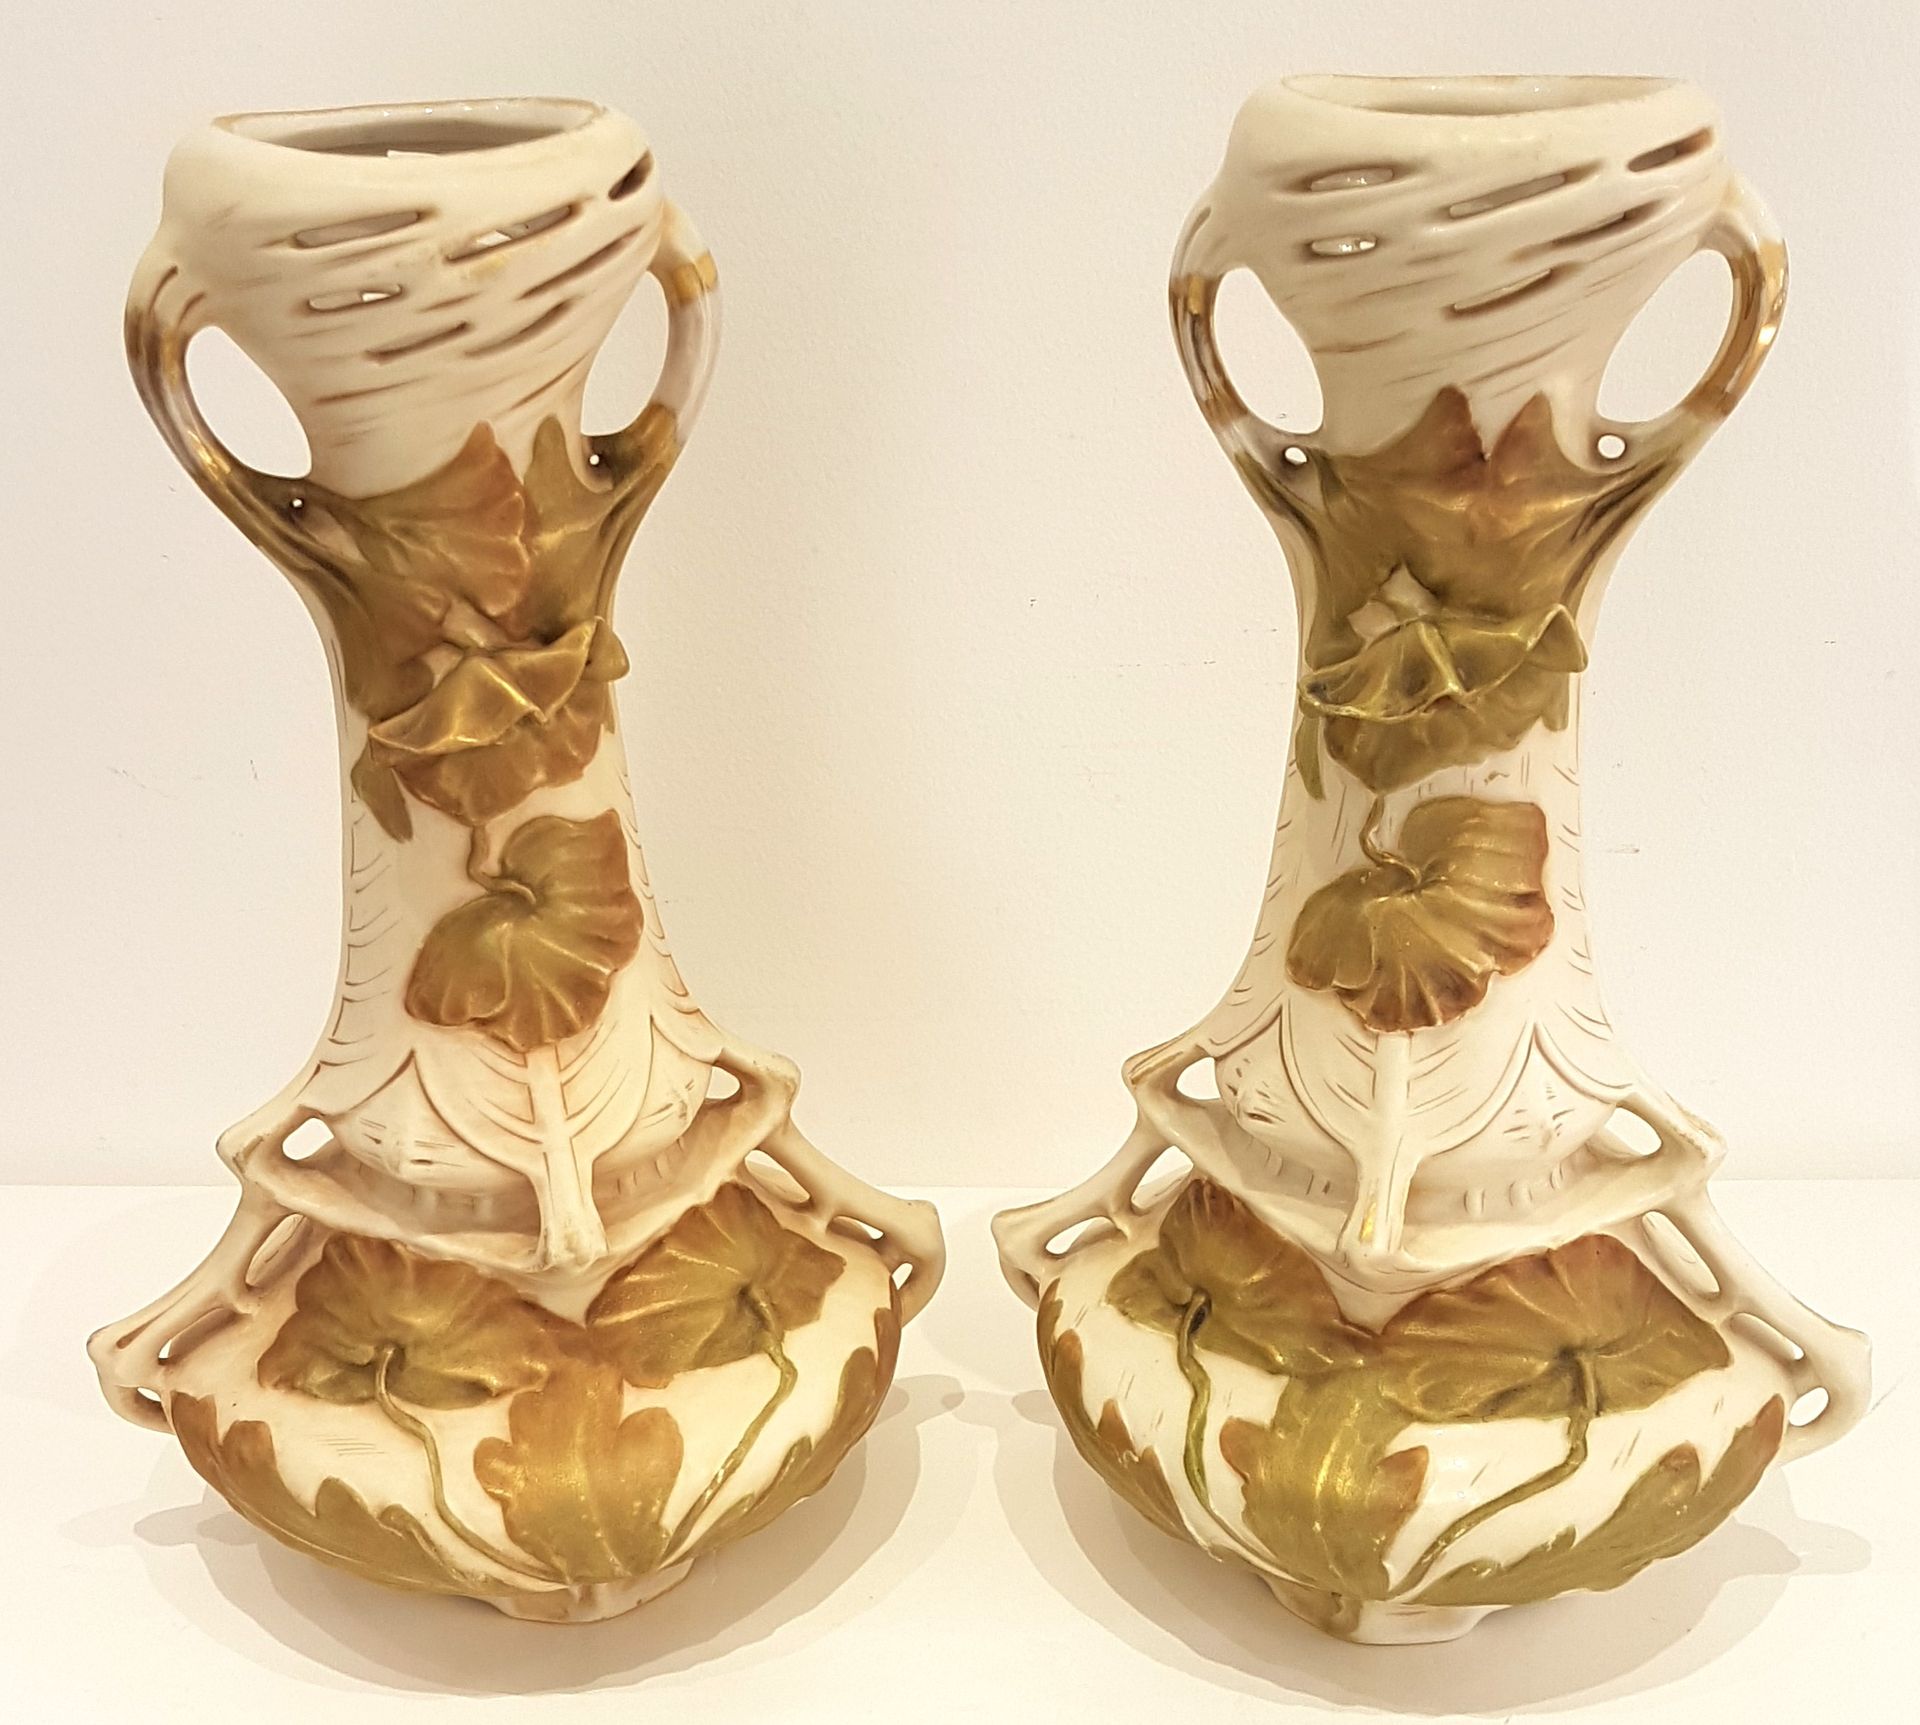 Null ROYAL DUX，一对奶油色模制饼干高颈花瓶，饰以镀金树叶和罂粟花
底部有标记和编号 
约 1900 年
H.34 厘米